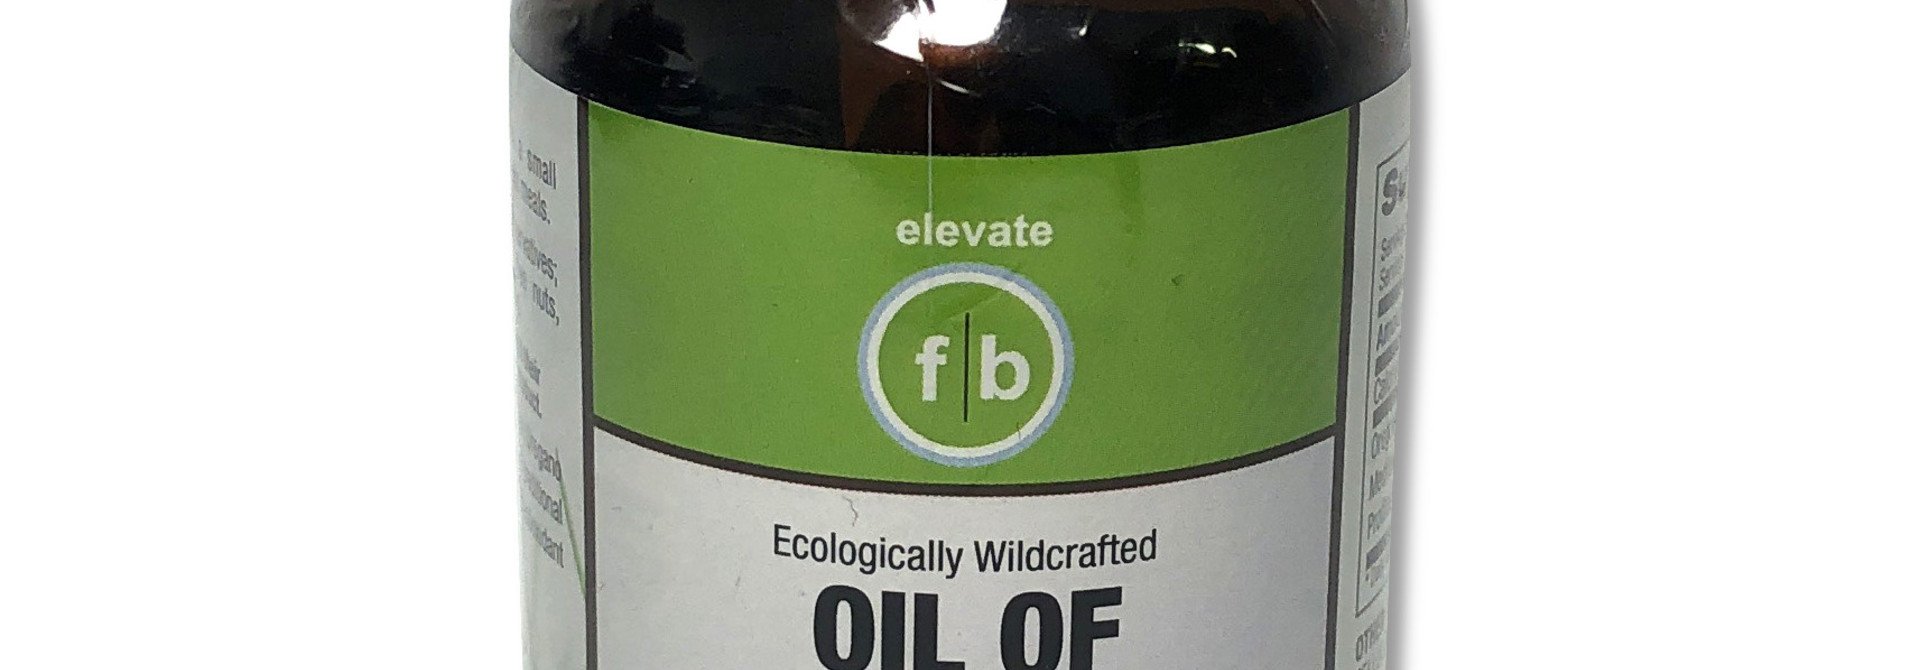 FLATBELLY  OIL OF OREGANO